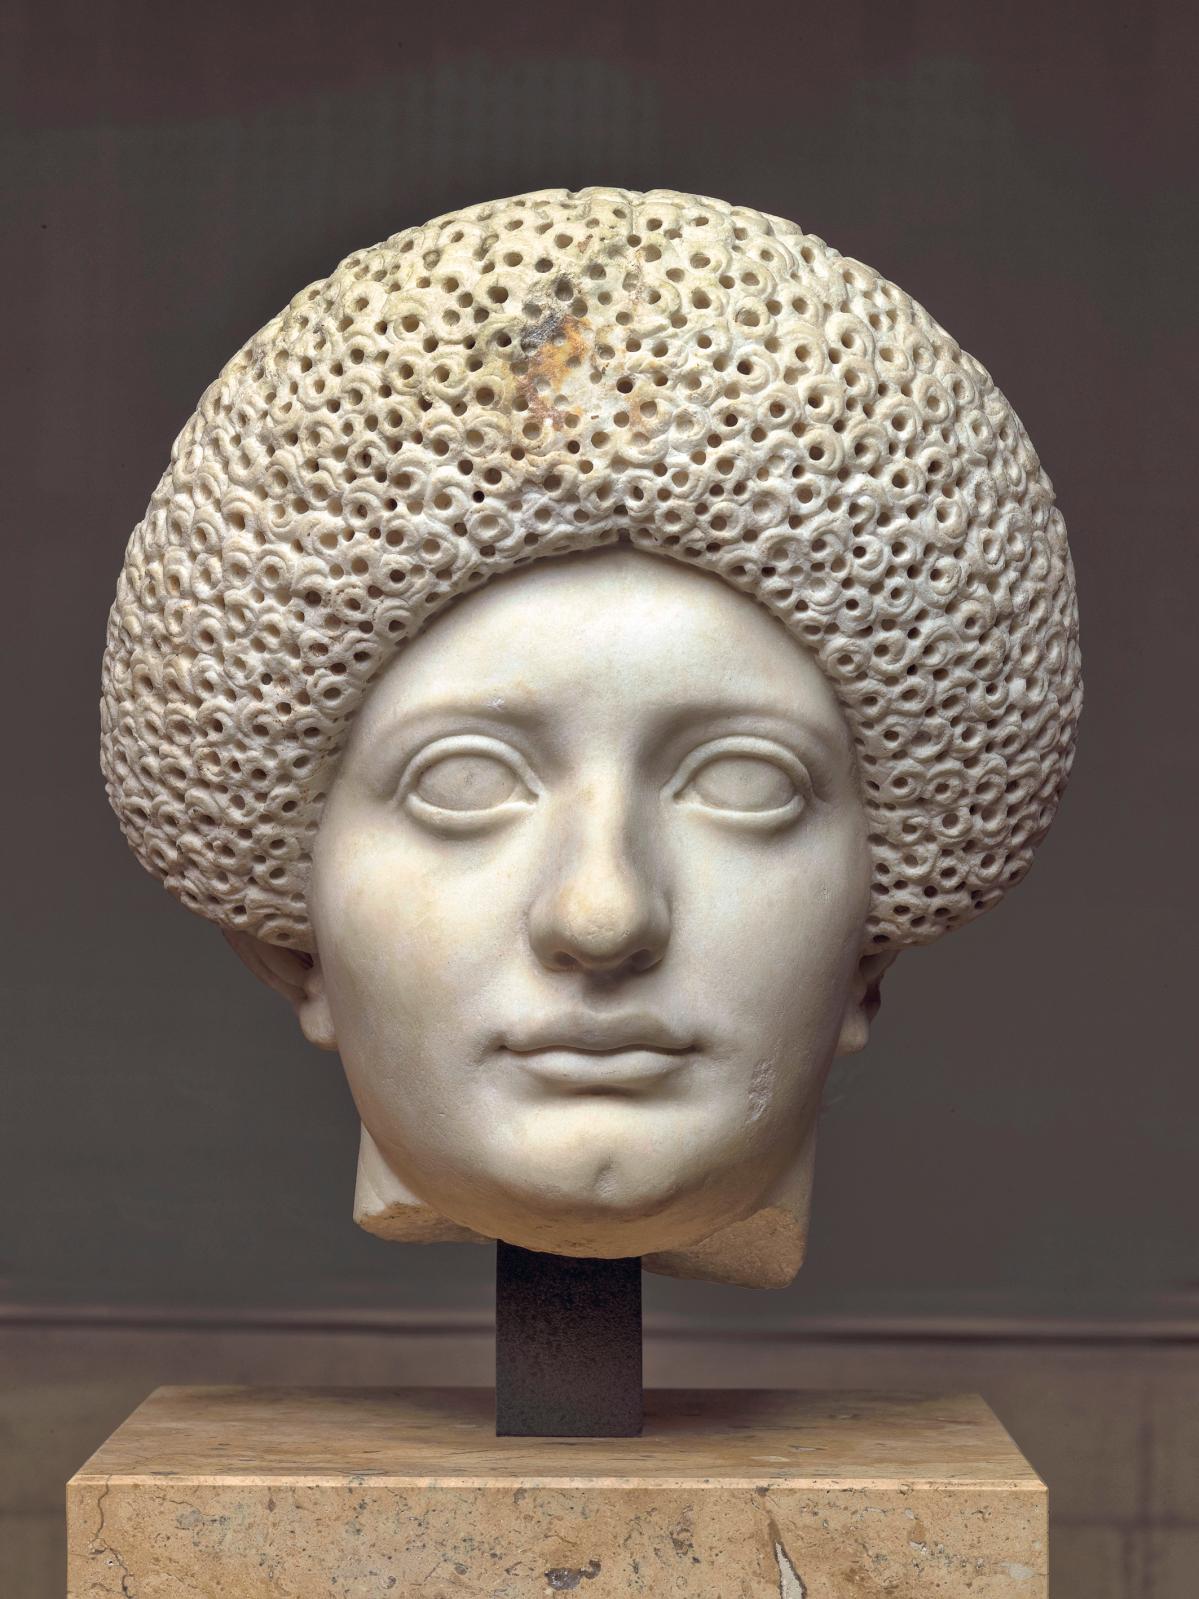 D’Alésia à Rome, l’aventure archéologique de Napoléon III au musée d’Archéologie nationale